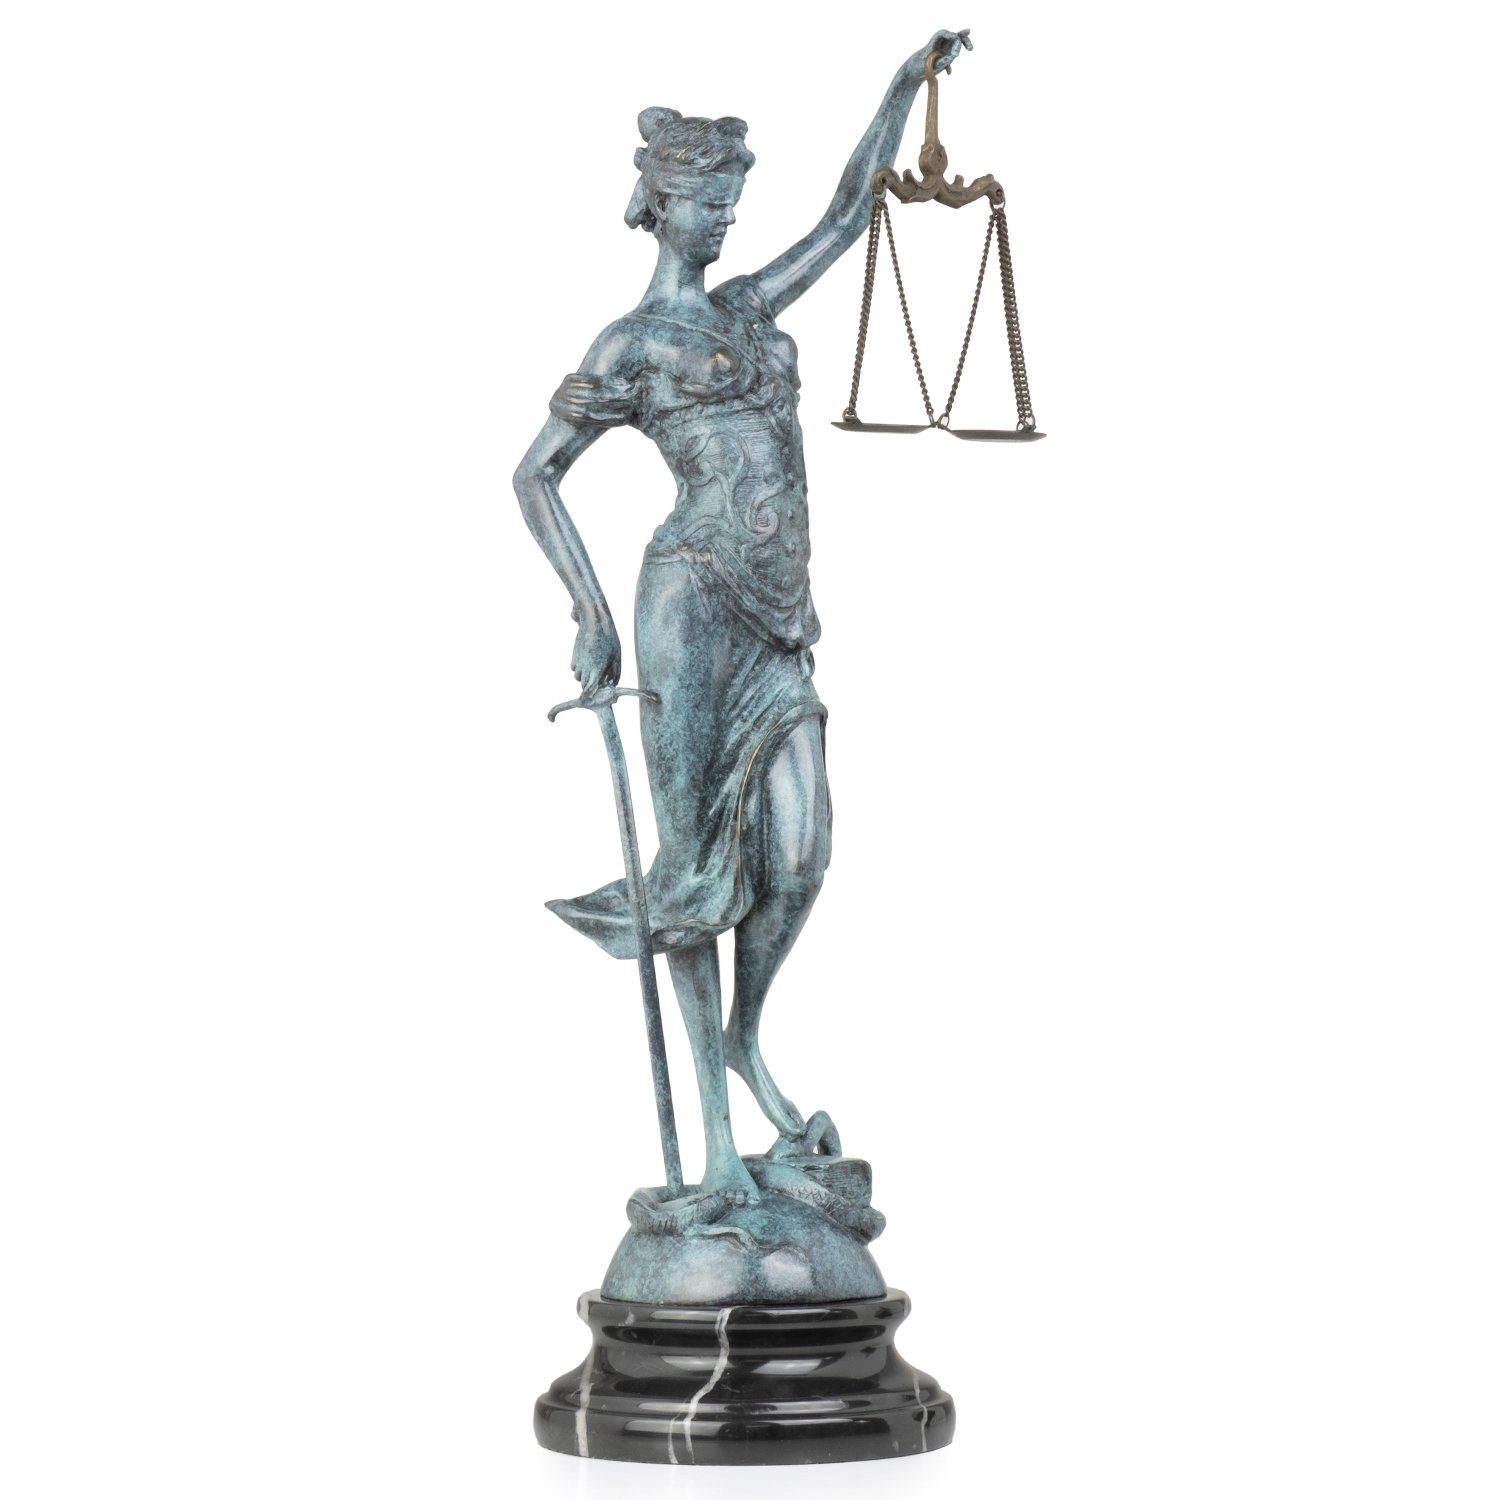 Moritz Skulptur Bronzefigur Justitia bemalt, Figuren Statue Skulpturen Antik-Stil